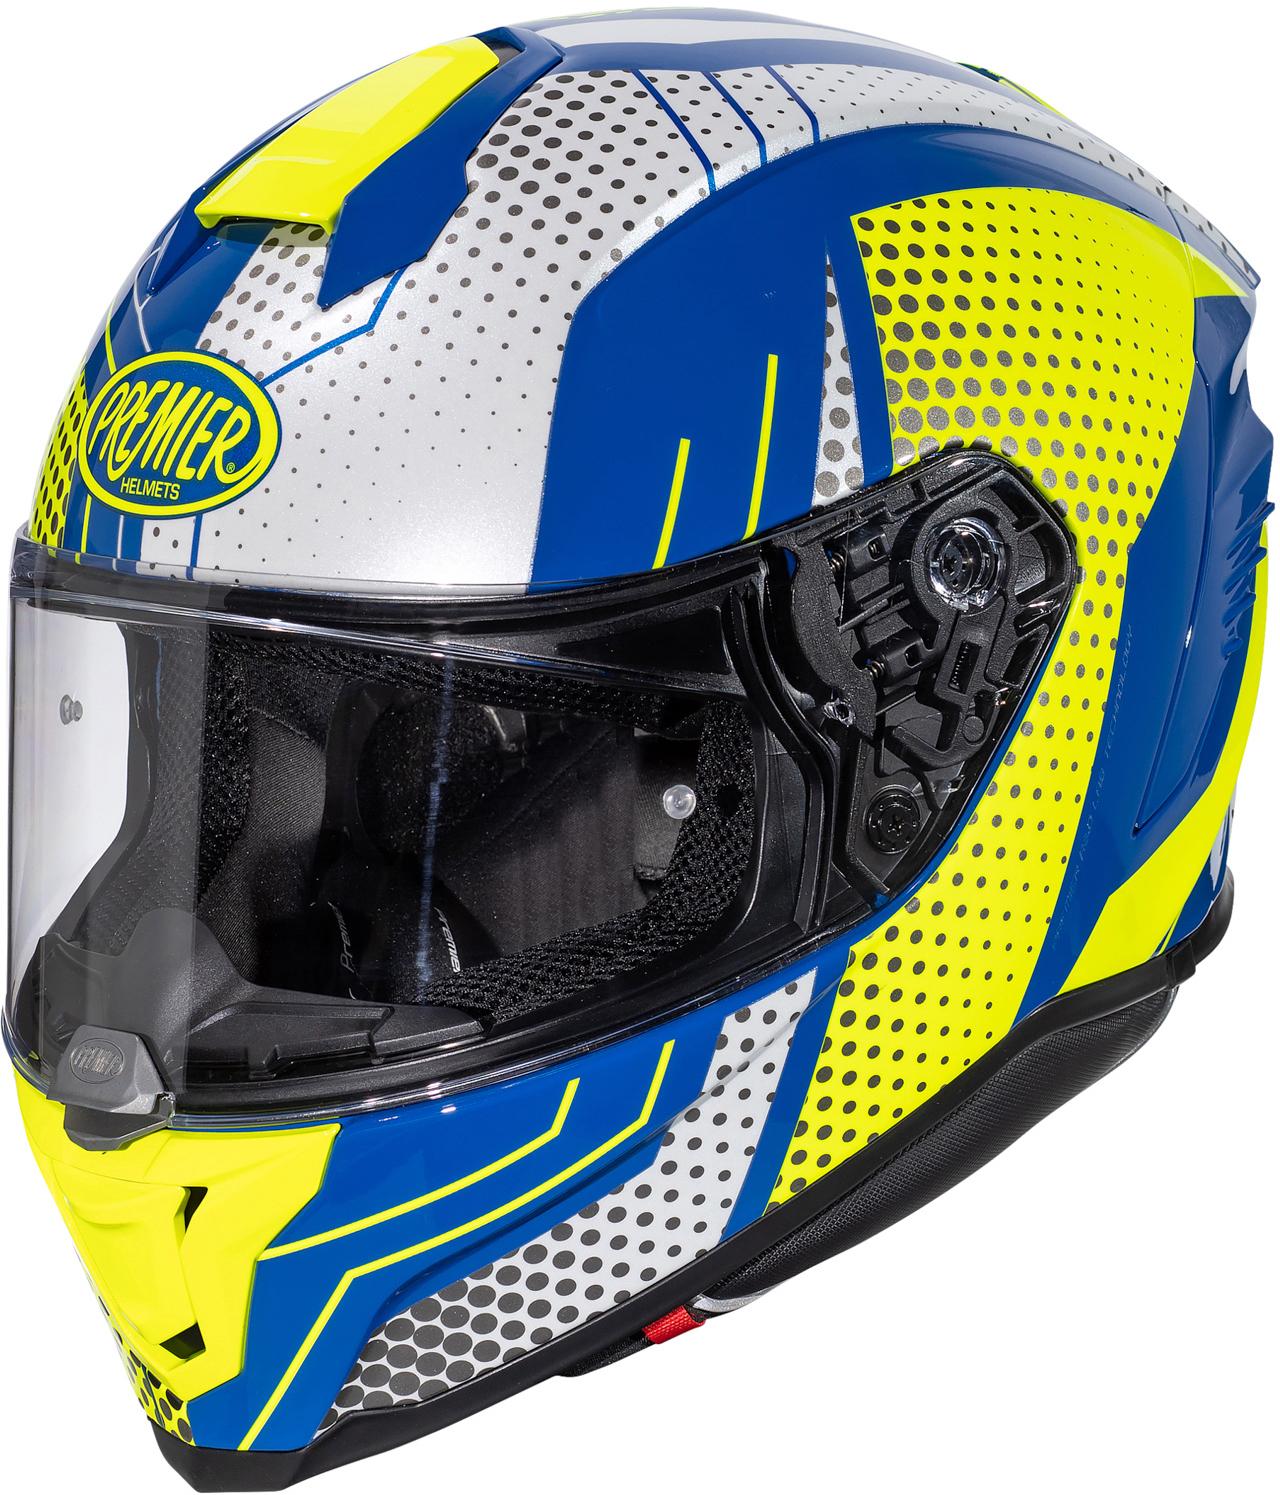 Premier Hyper Bp Full Face Motorcycle Helmet - White/Blue, M